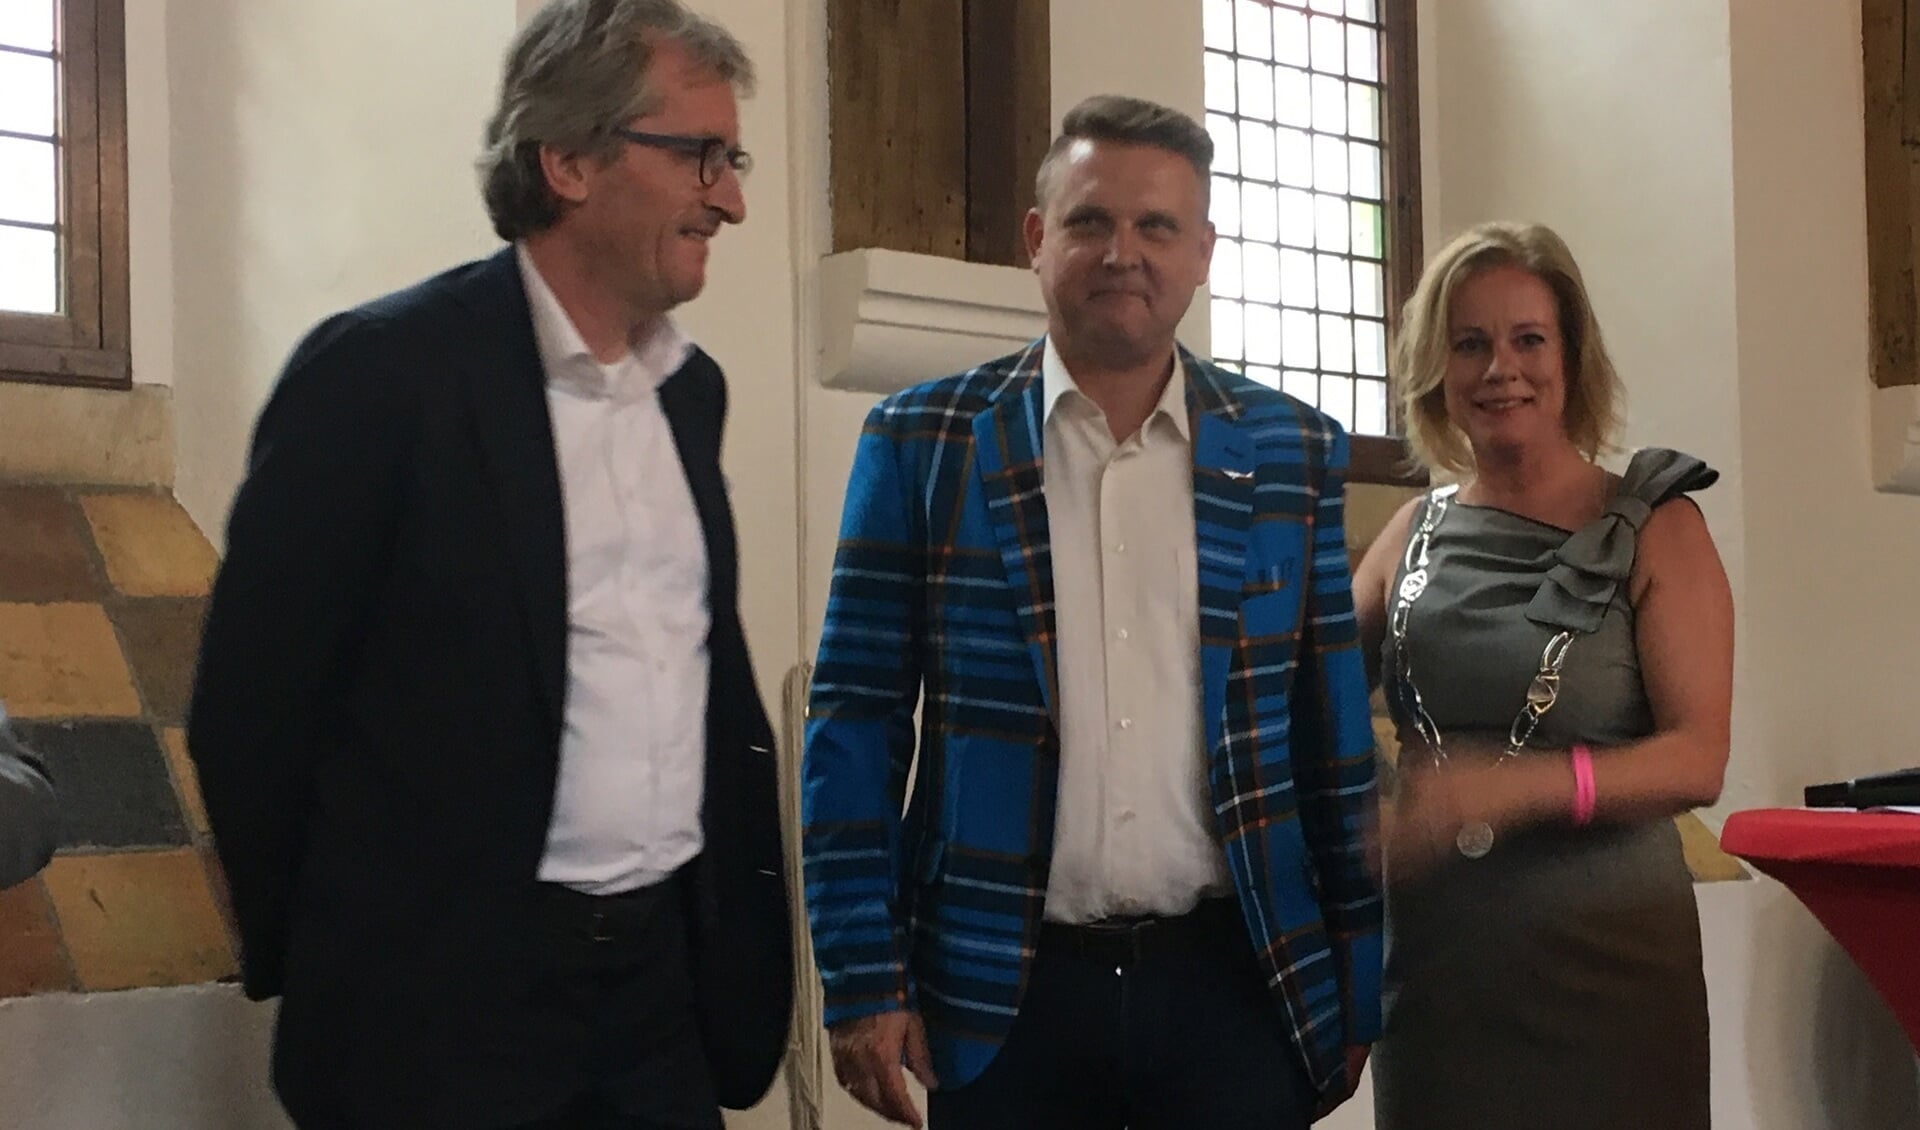 v.l.n.r.: Arjen Sietsma en Cor Brandsma (beiden directeur van BrandOil) en burgemeester Vermeulen van Zutphen. Foto: PR